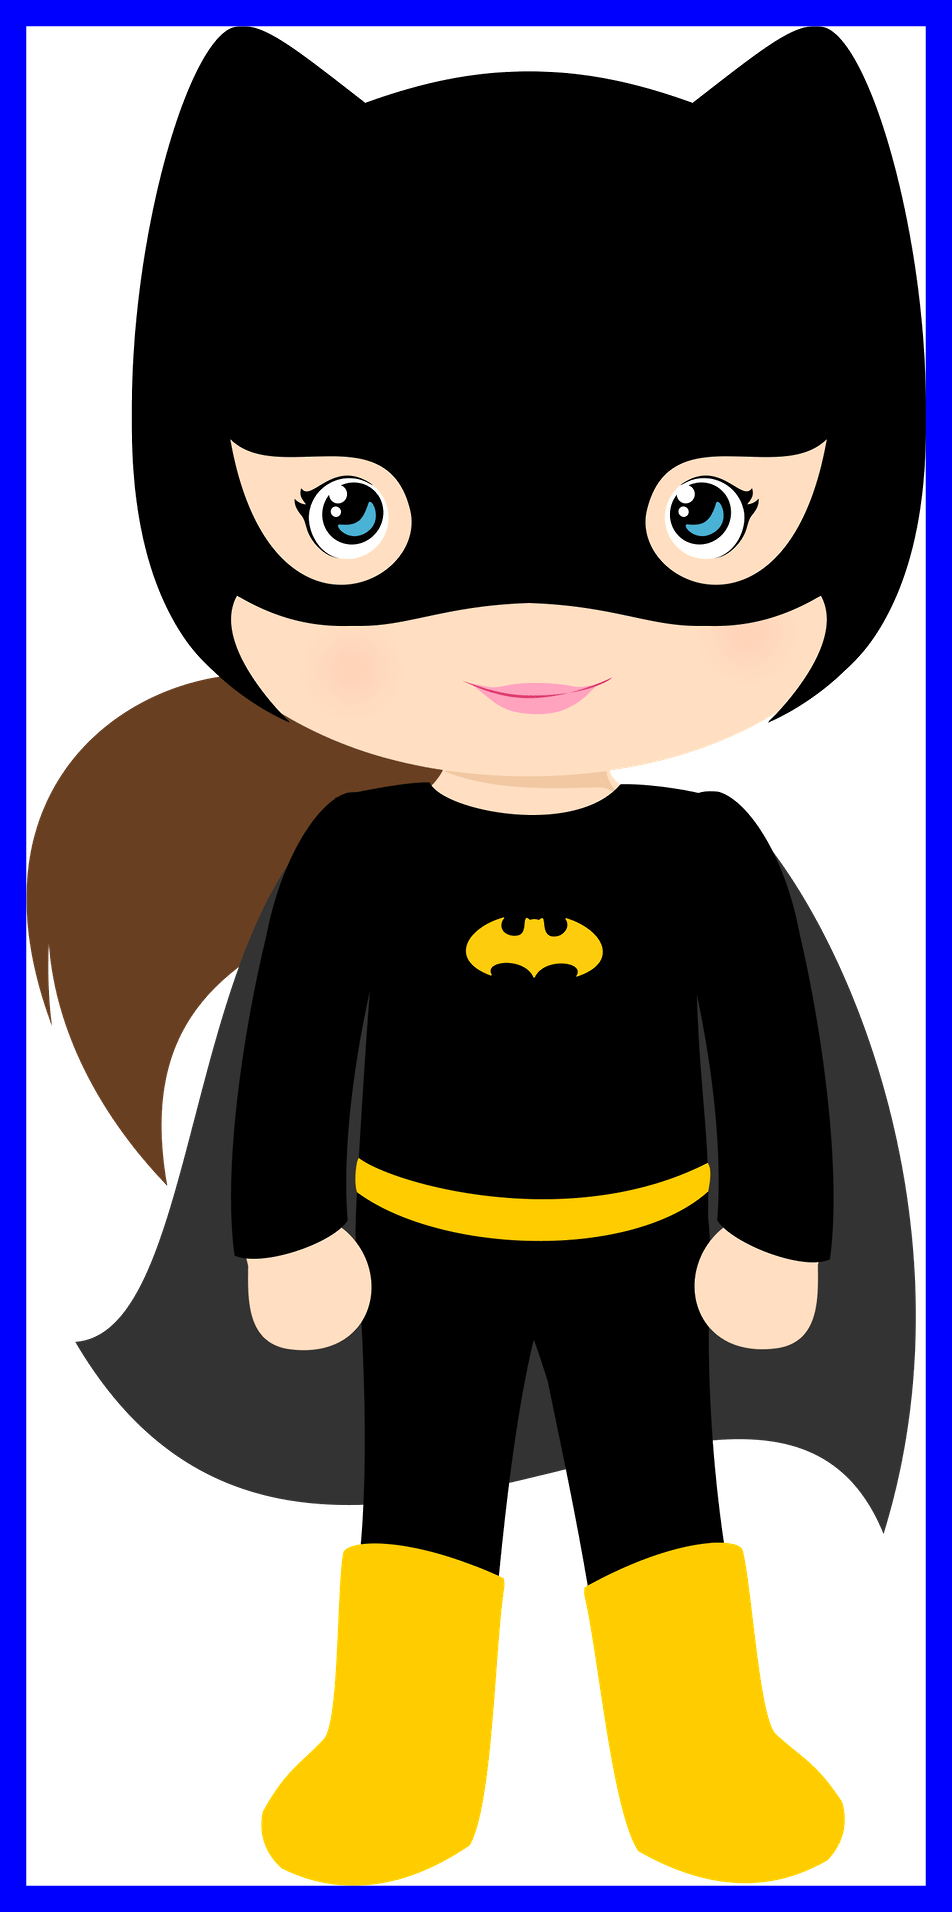 Batgirl logo PNG imagen Transparente